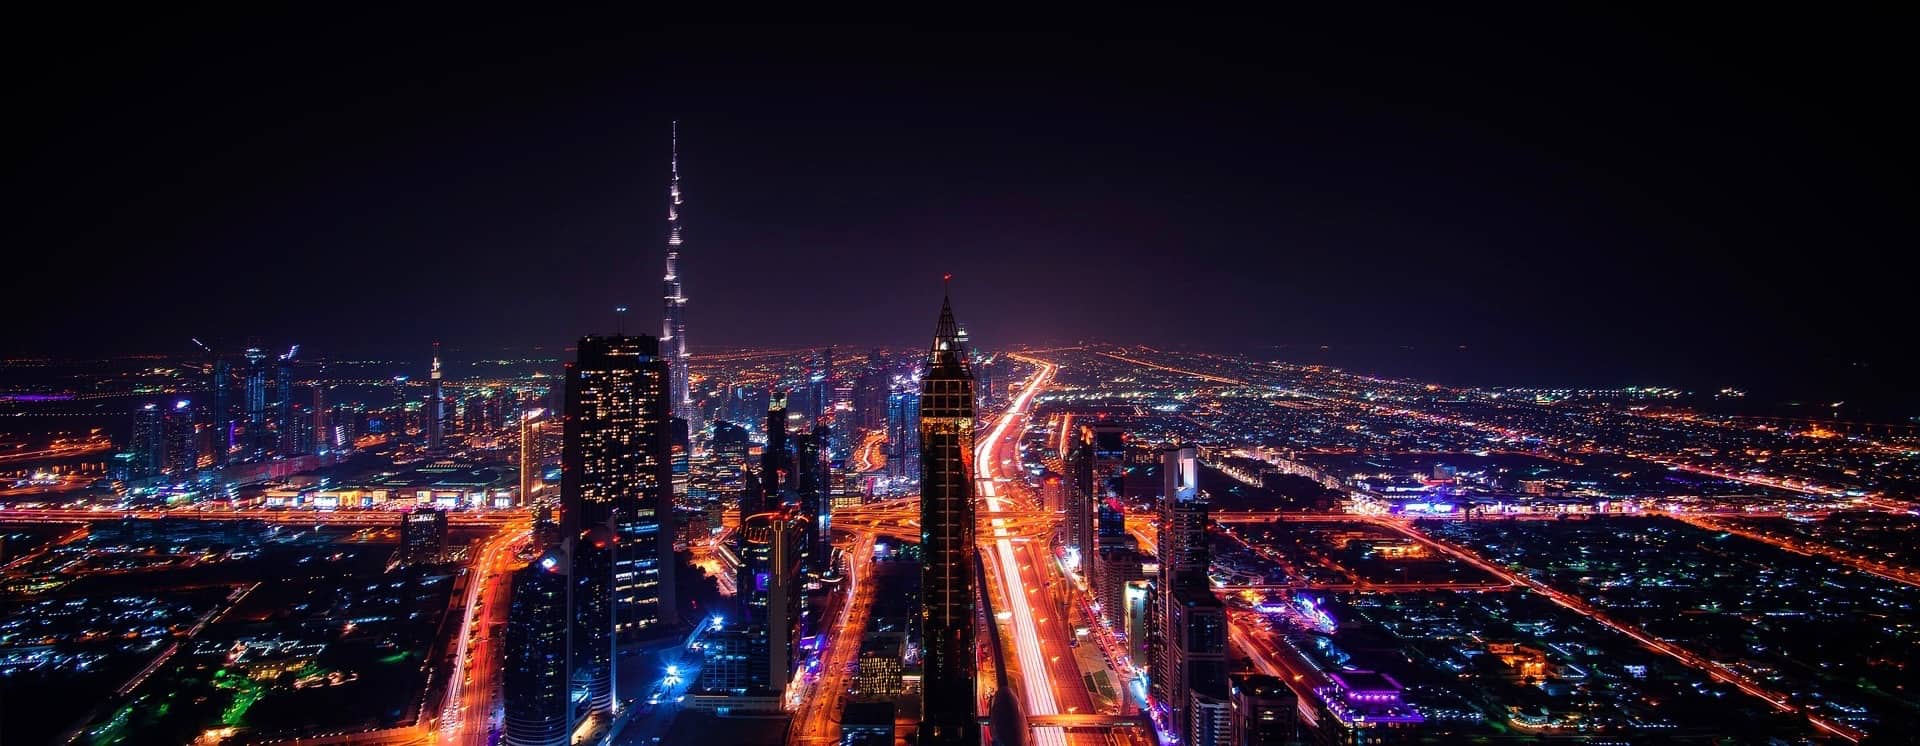 Horizonte imponente e icônico de Dubai, iluminado à noite